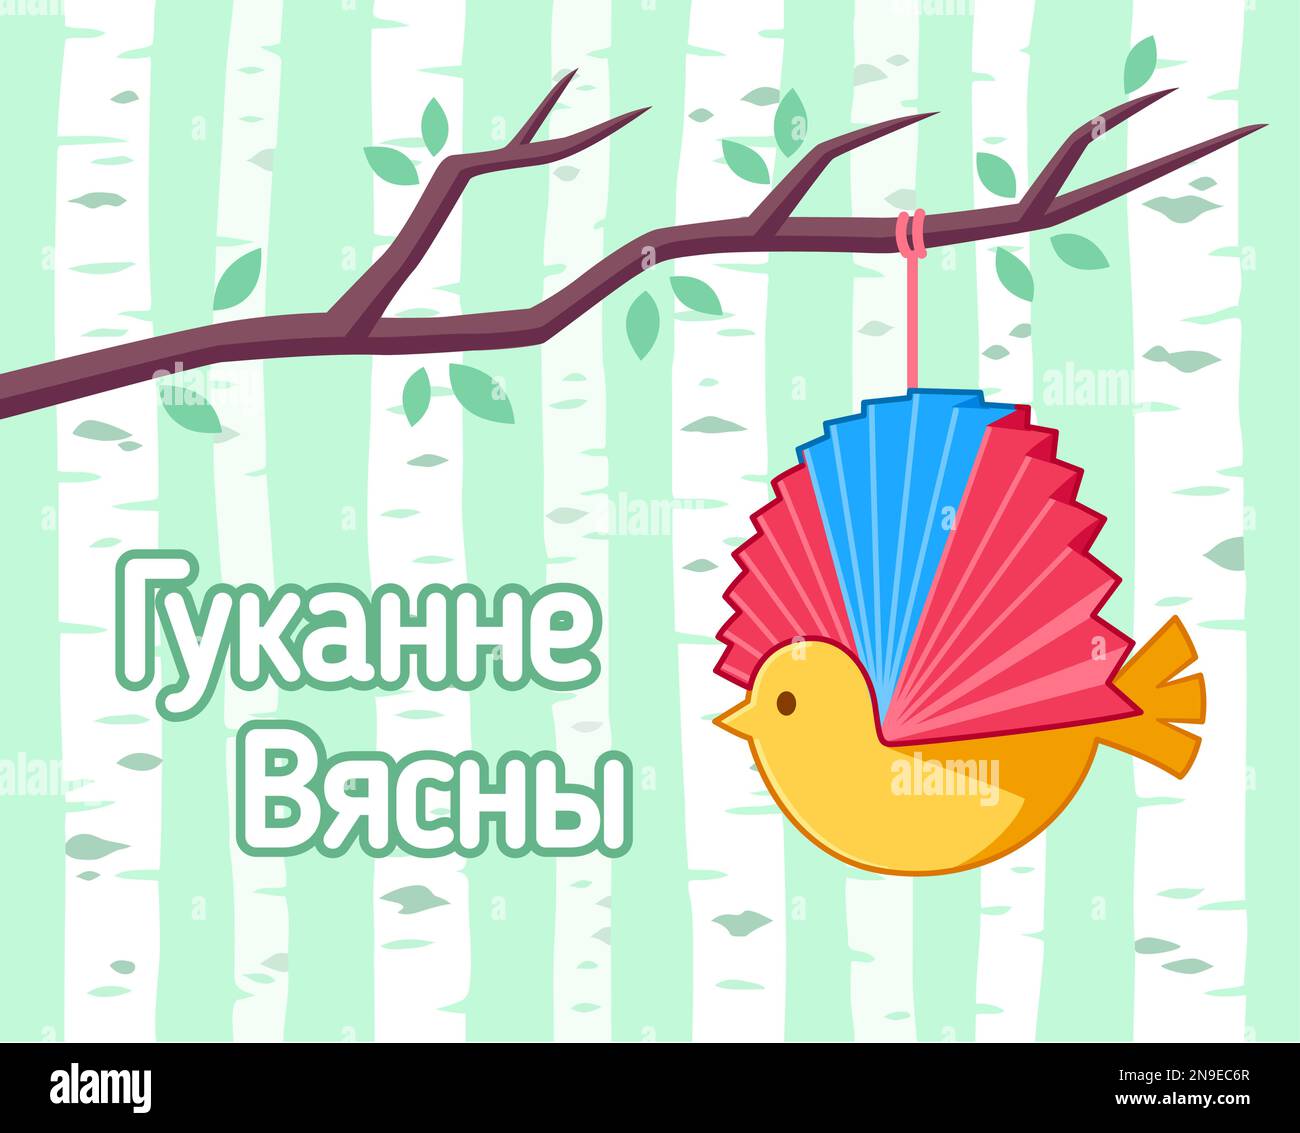 Гуканне вясны (Frühjahrsfeier) in Belarus. Papiervogel hängt vom Ast, nationale Tradition. Vektordarstellung. Stock Vektor